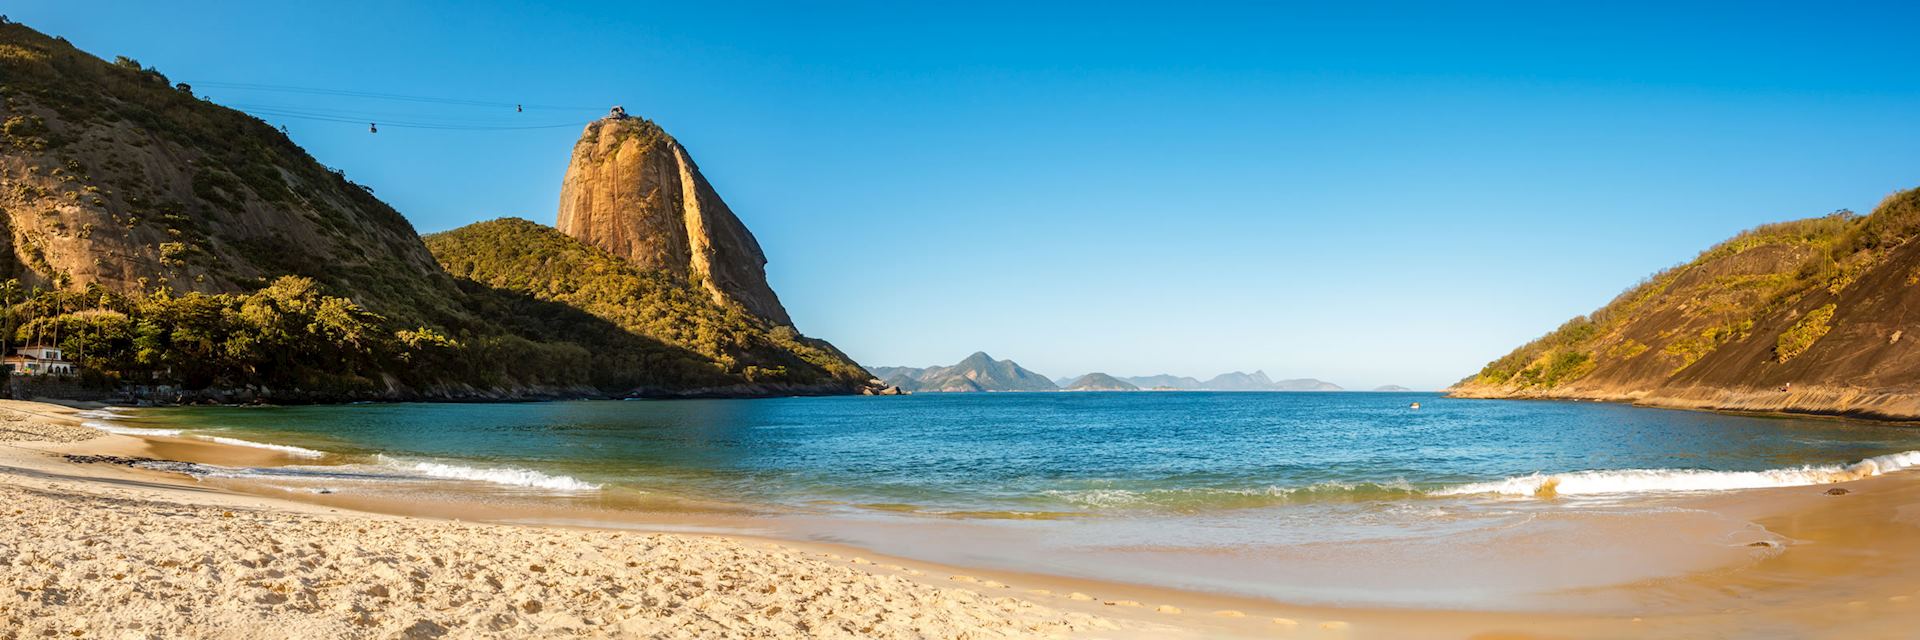 Vermelha Beach near Rio de Janeiro 